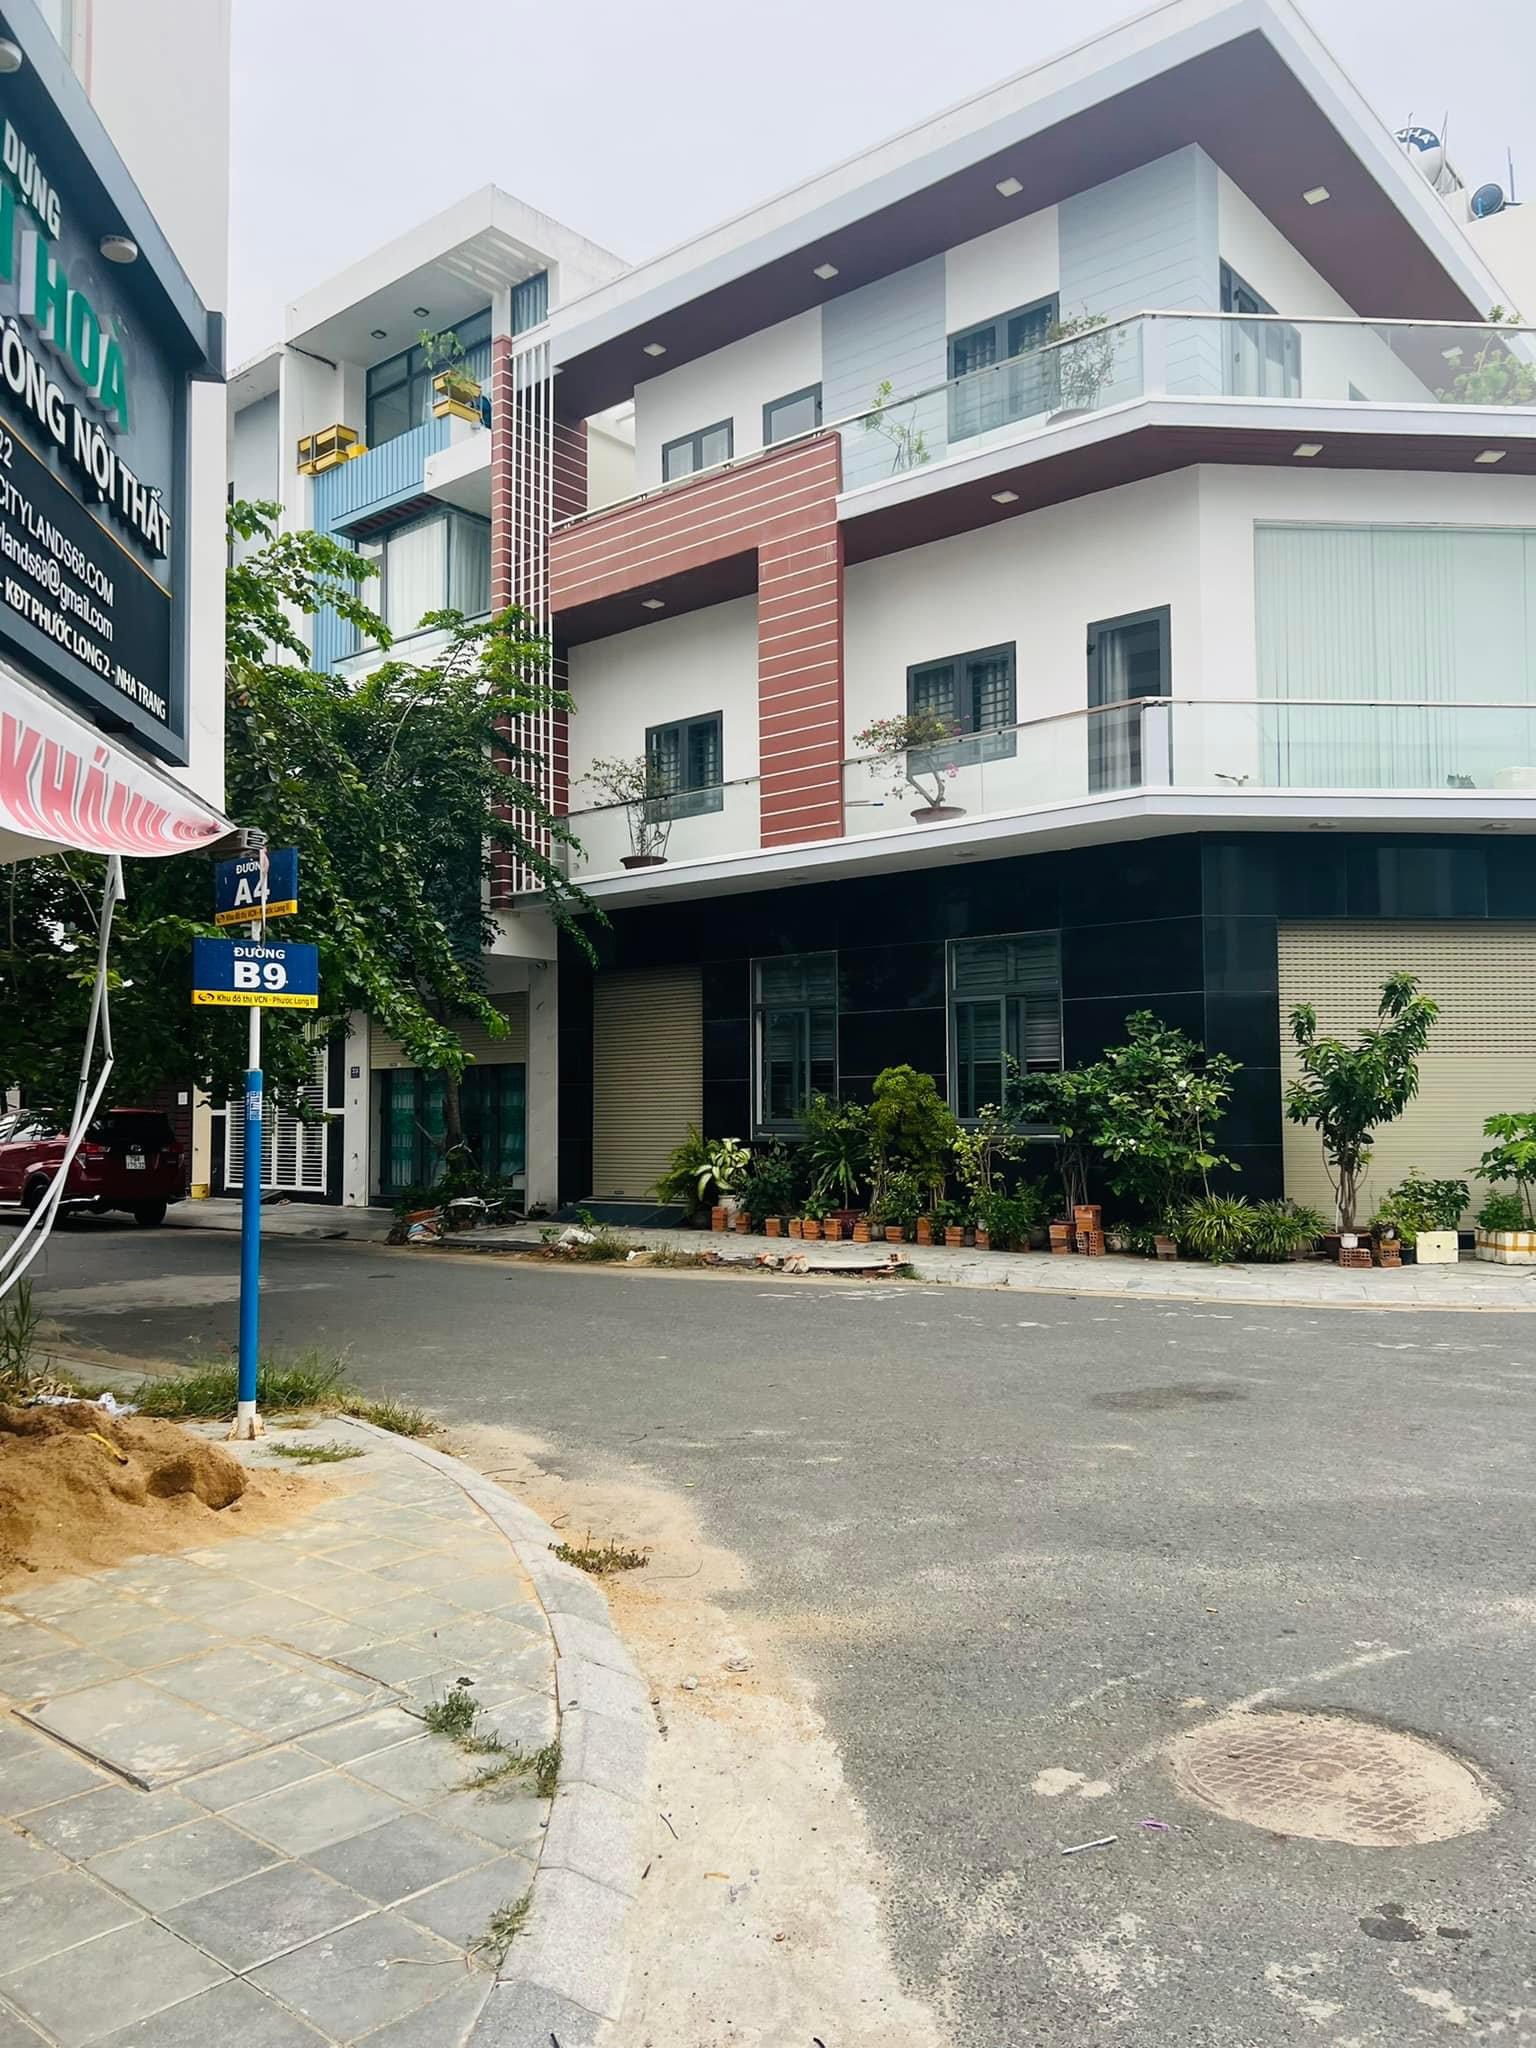 Bán nhanh nhà đường B9 VCN Phước Long 2 giá chỉ 3 tỷ (bao giá thị trường)